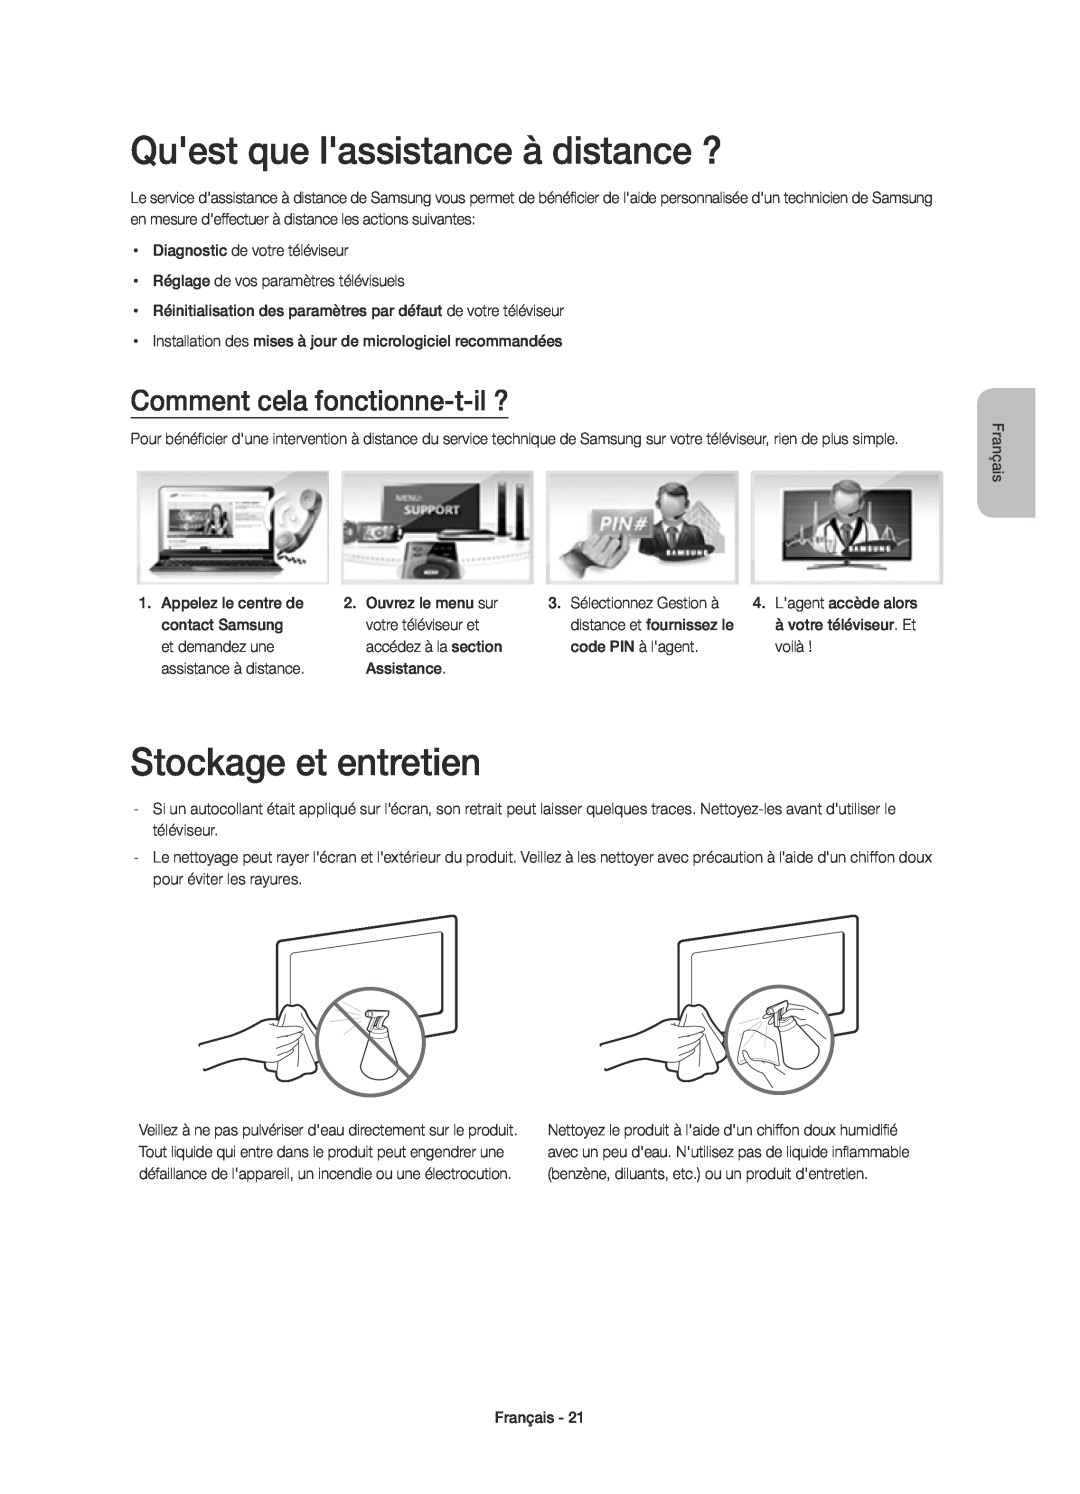 Samsung UE40H6770SVXZG manual Quest que lassistance à distance ?, Stockage et entretien, Comment cela fonctionne-t-il ? 